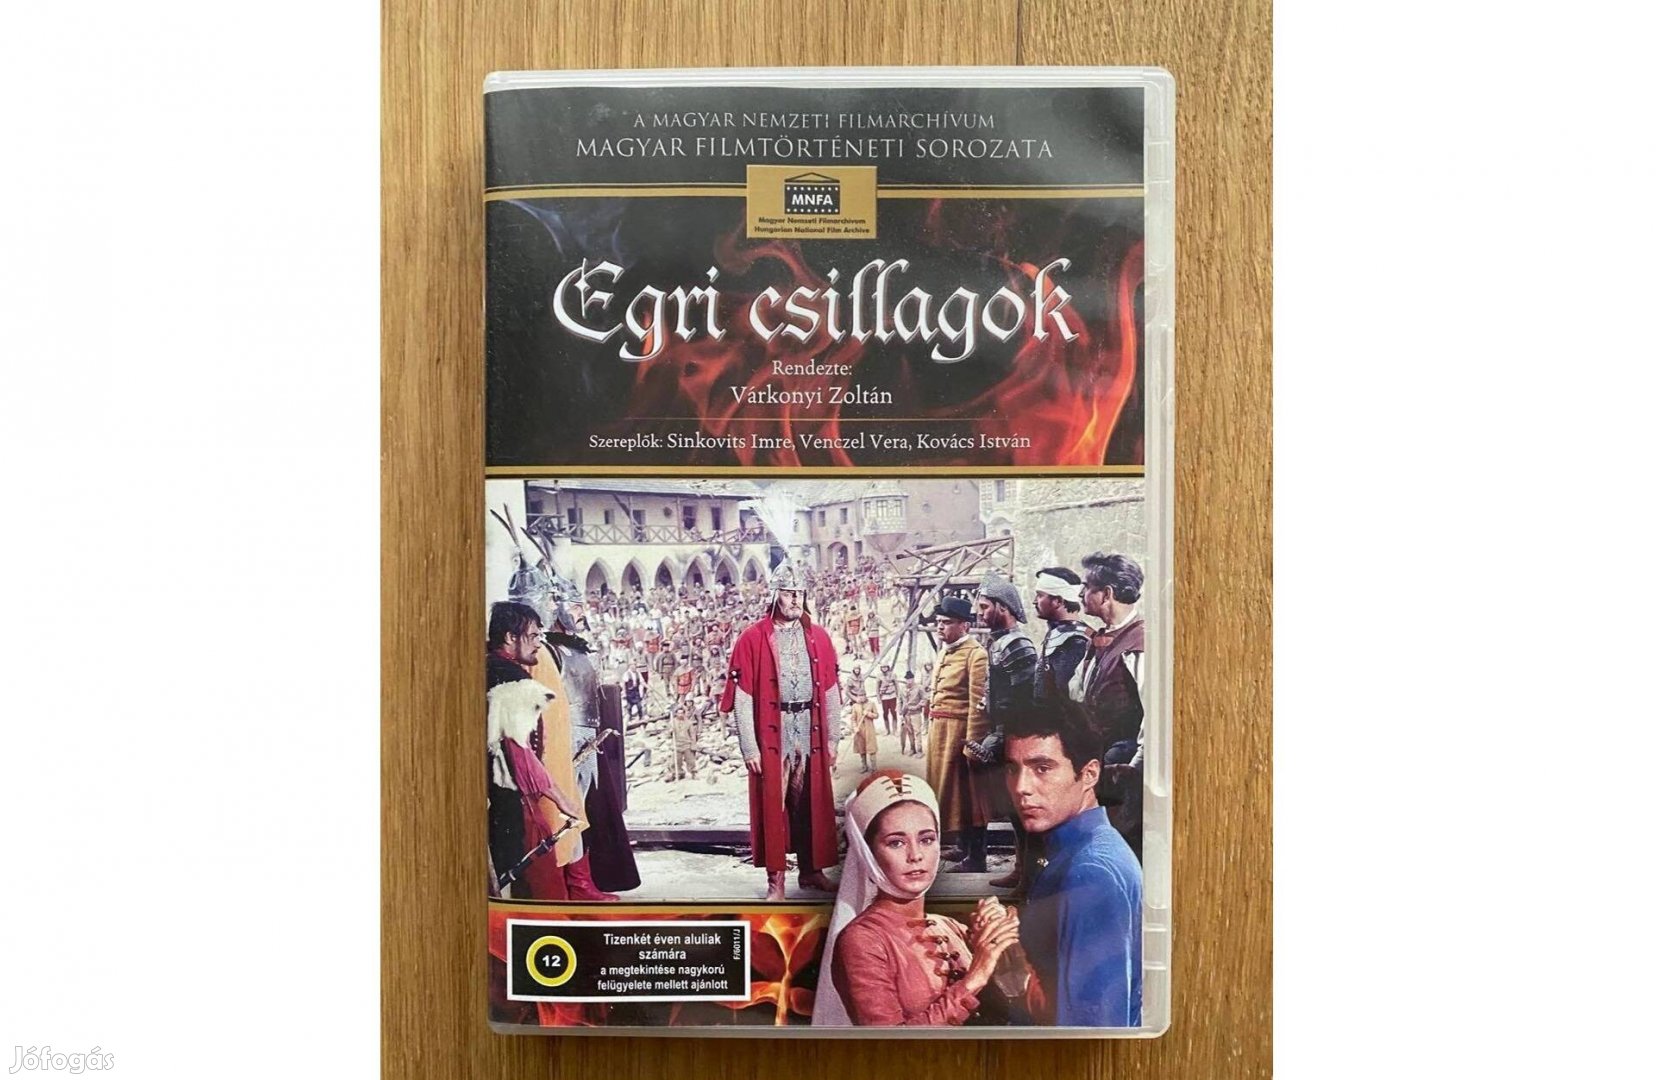 Egri csillagok DVD (eredeti, Nemzeti Filmarchívum)